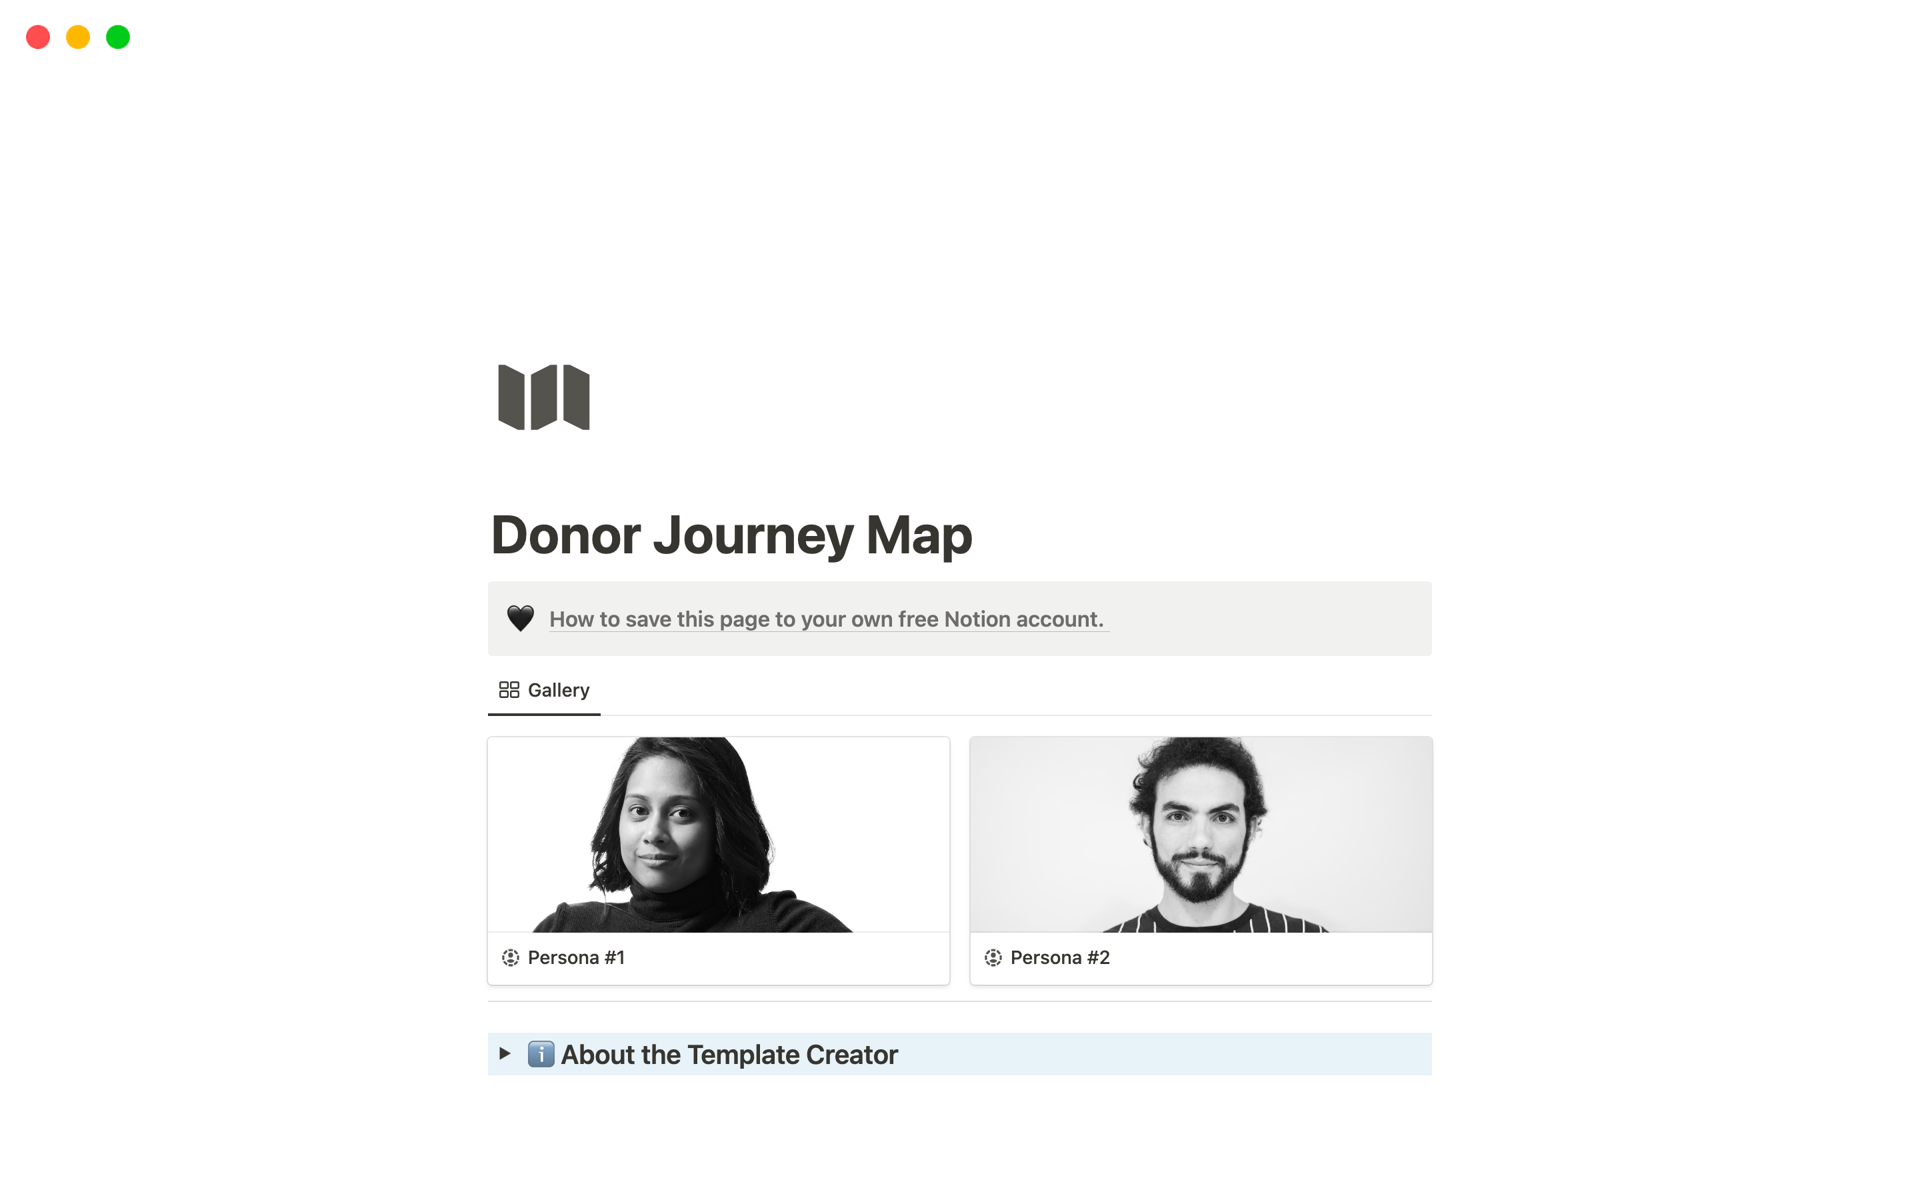 Donor Journey Map님의 템플릿 미리보기